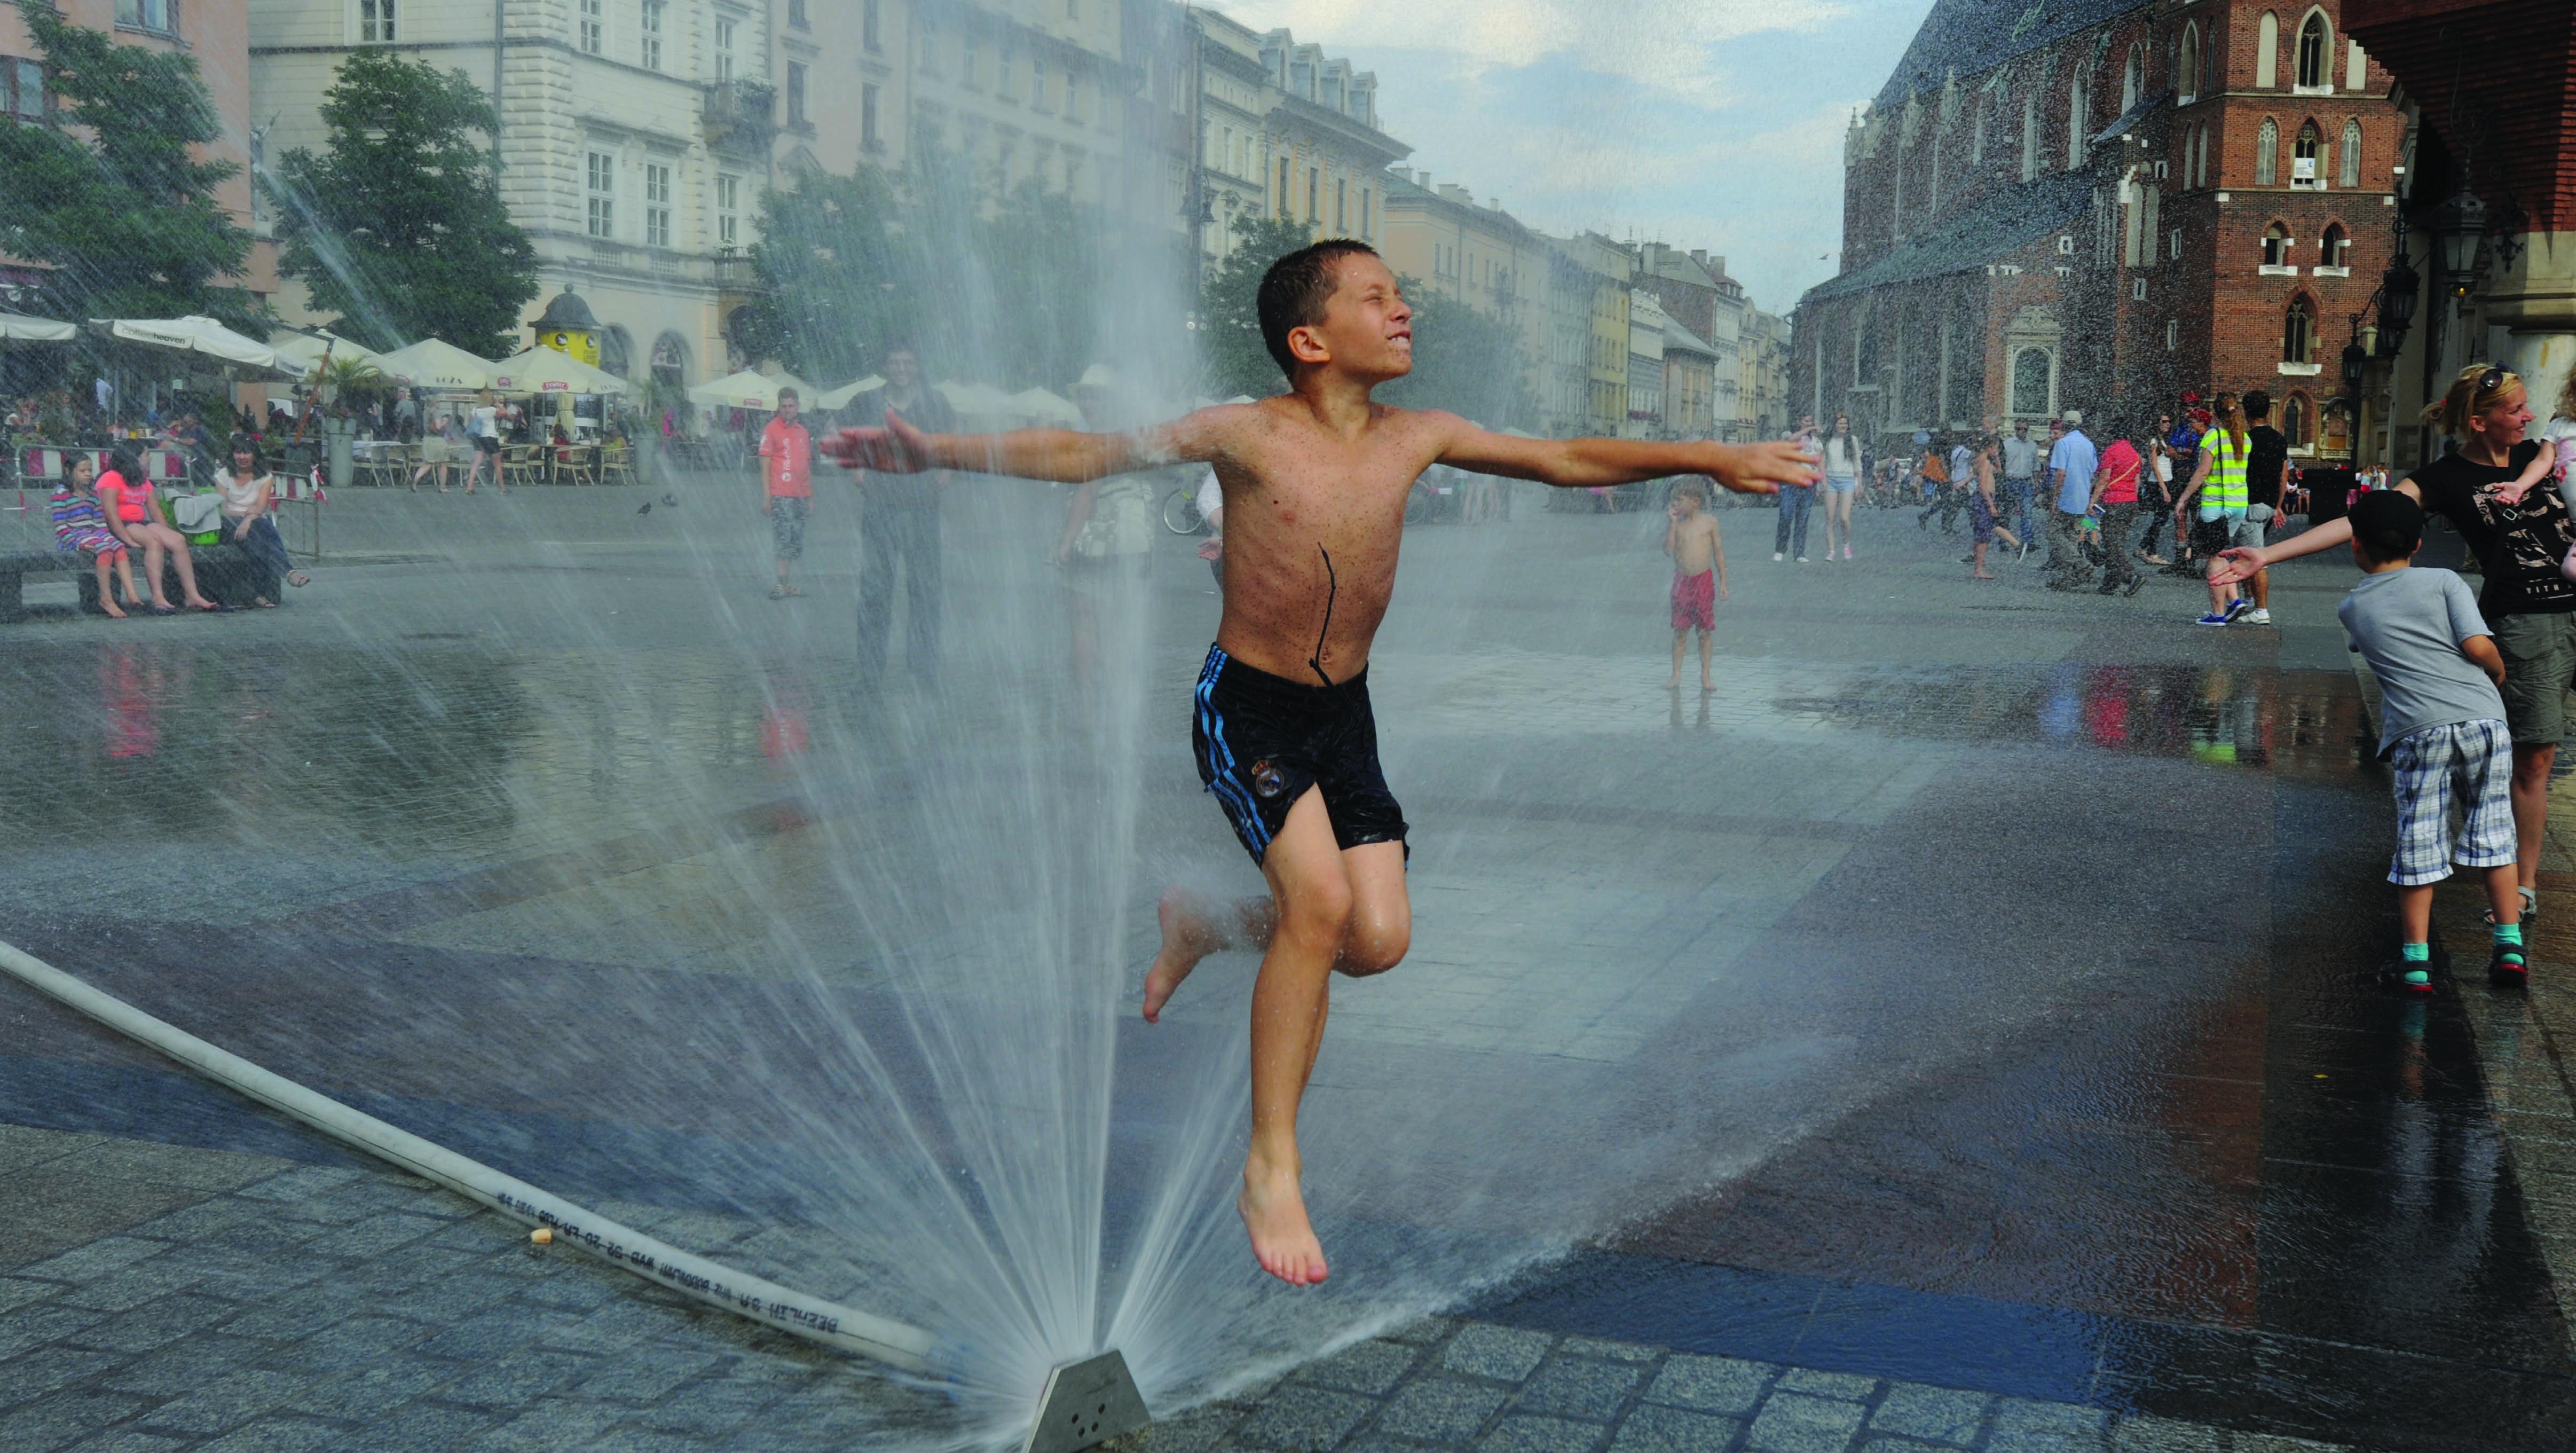 Fotografia na rua de criança em calções de banho a saltar por cima de repuxo